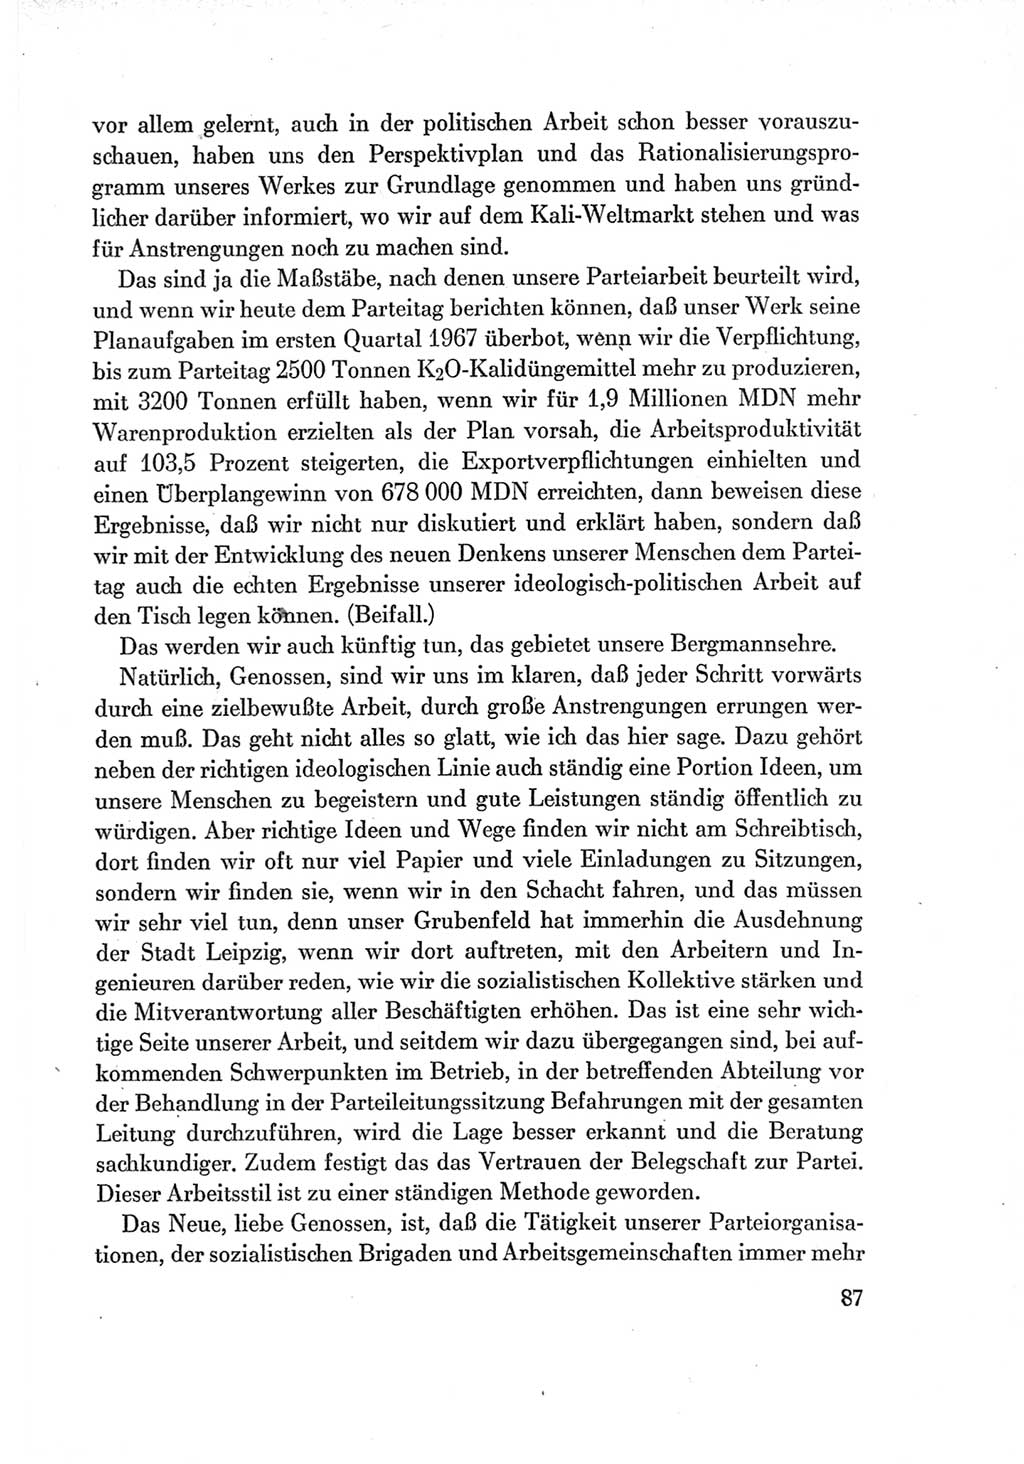 Protokoll der Verhandlungen des Ⅶ. Parteitages der Sozialistischen Einheitspartei Deutschlands (SED) [Deutsche Demokratische Republik (DDR)] 1967, Band Ⅱ, Seite 87 (Prot. Verh. Ⅶ. PT SED DDR 1967, Bd. Ⅱ, S. 87)